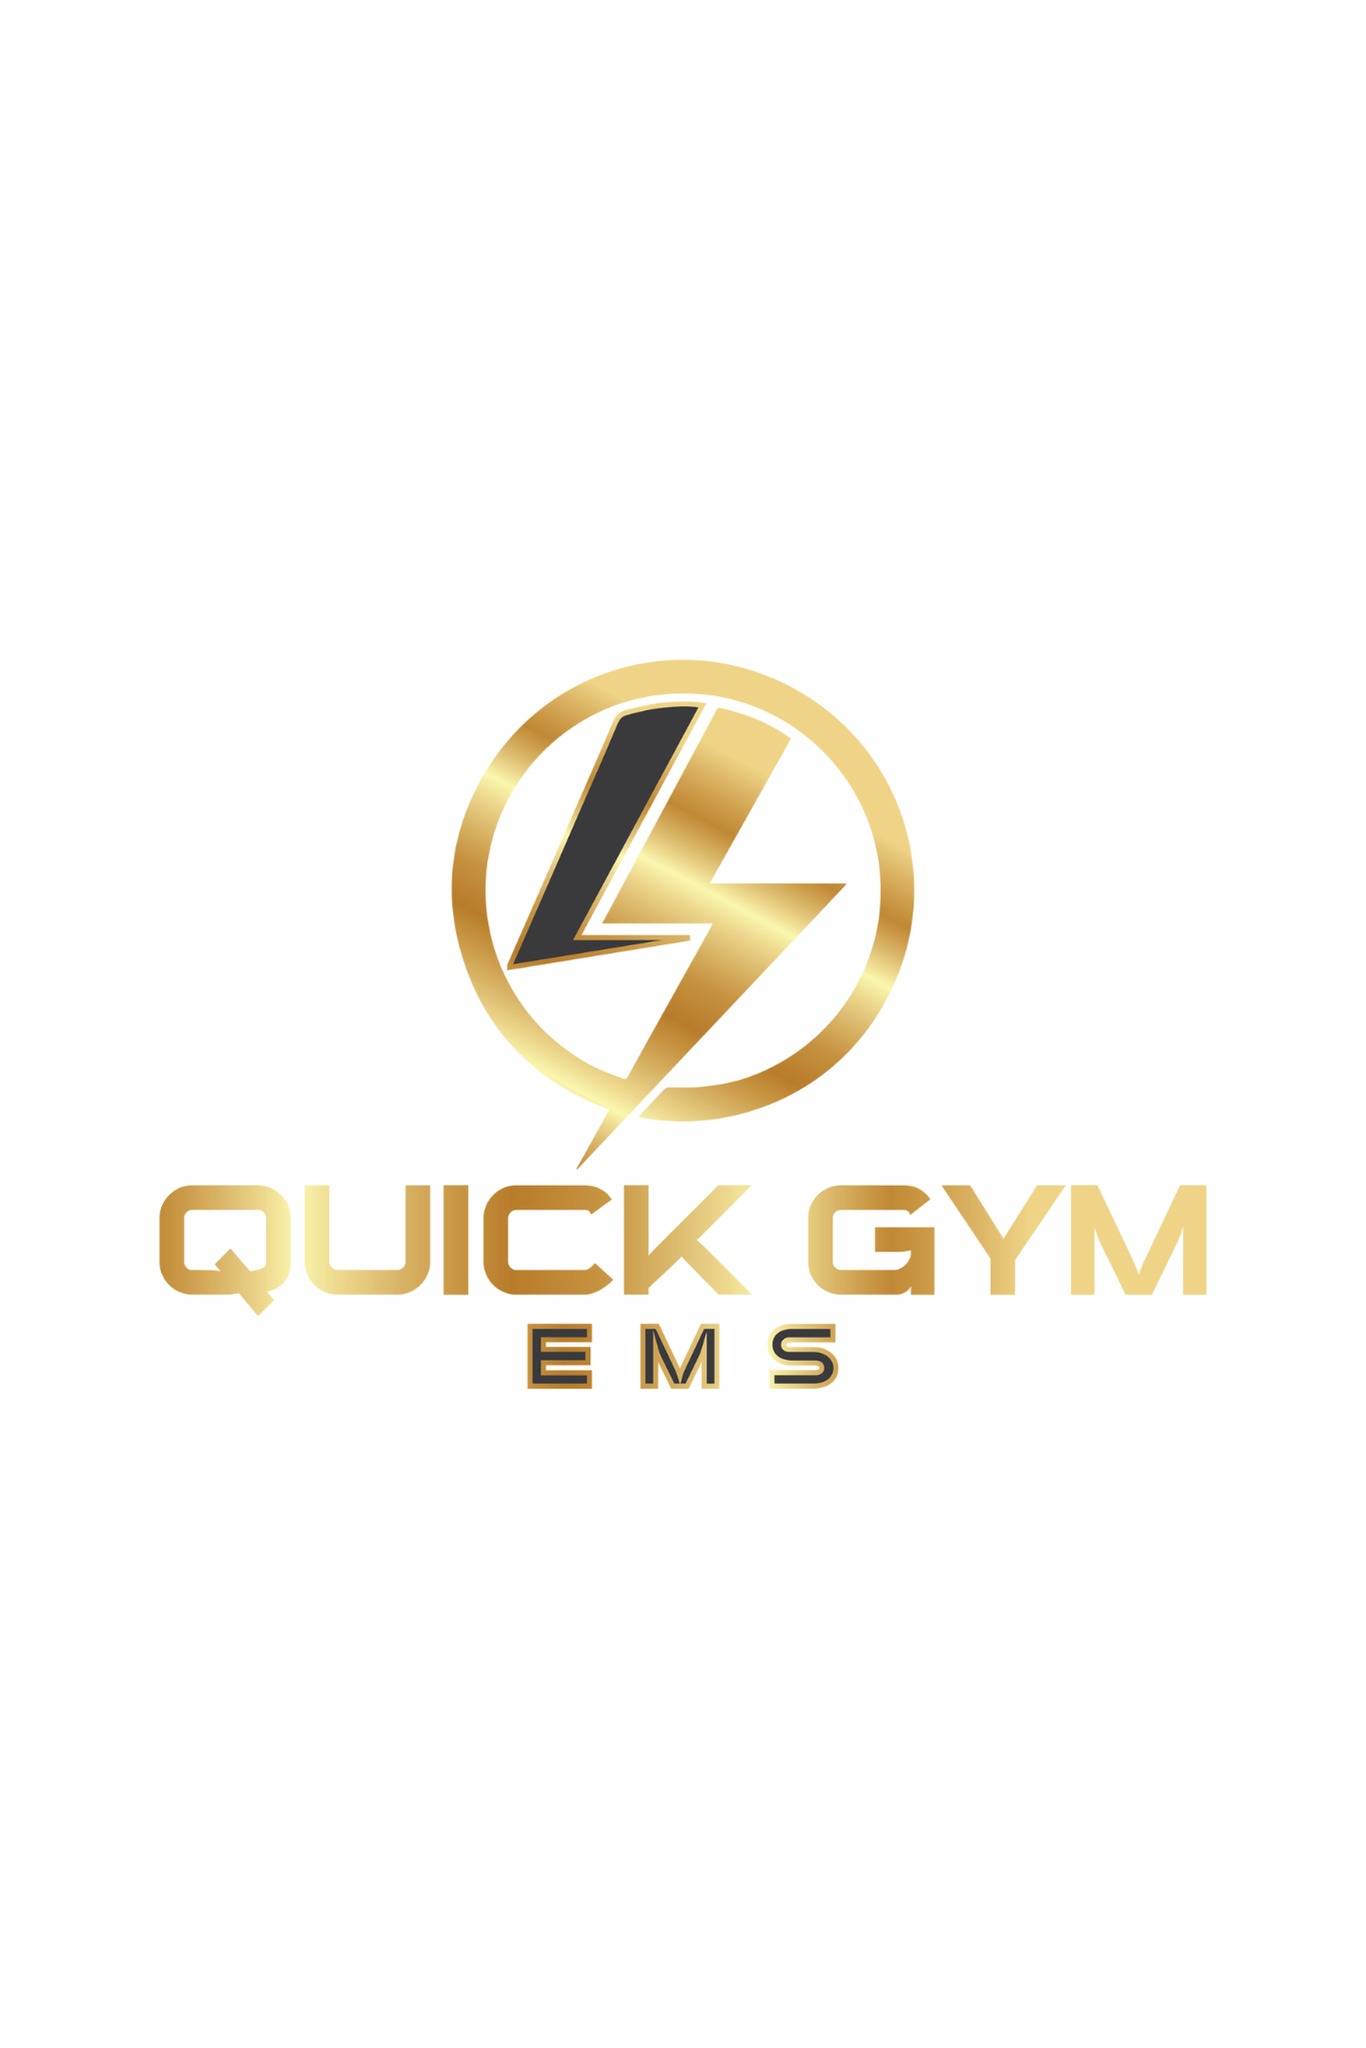 Quick Gym EMS Gdańsk